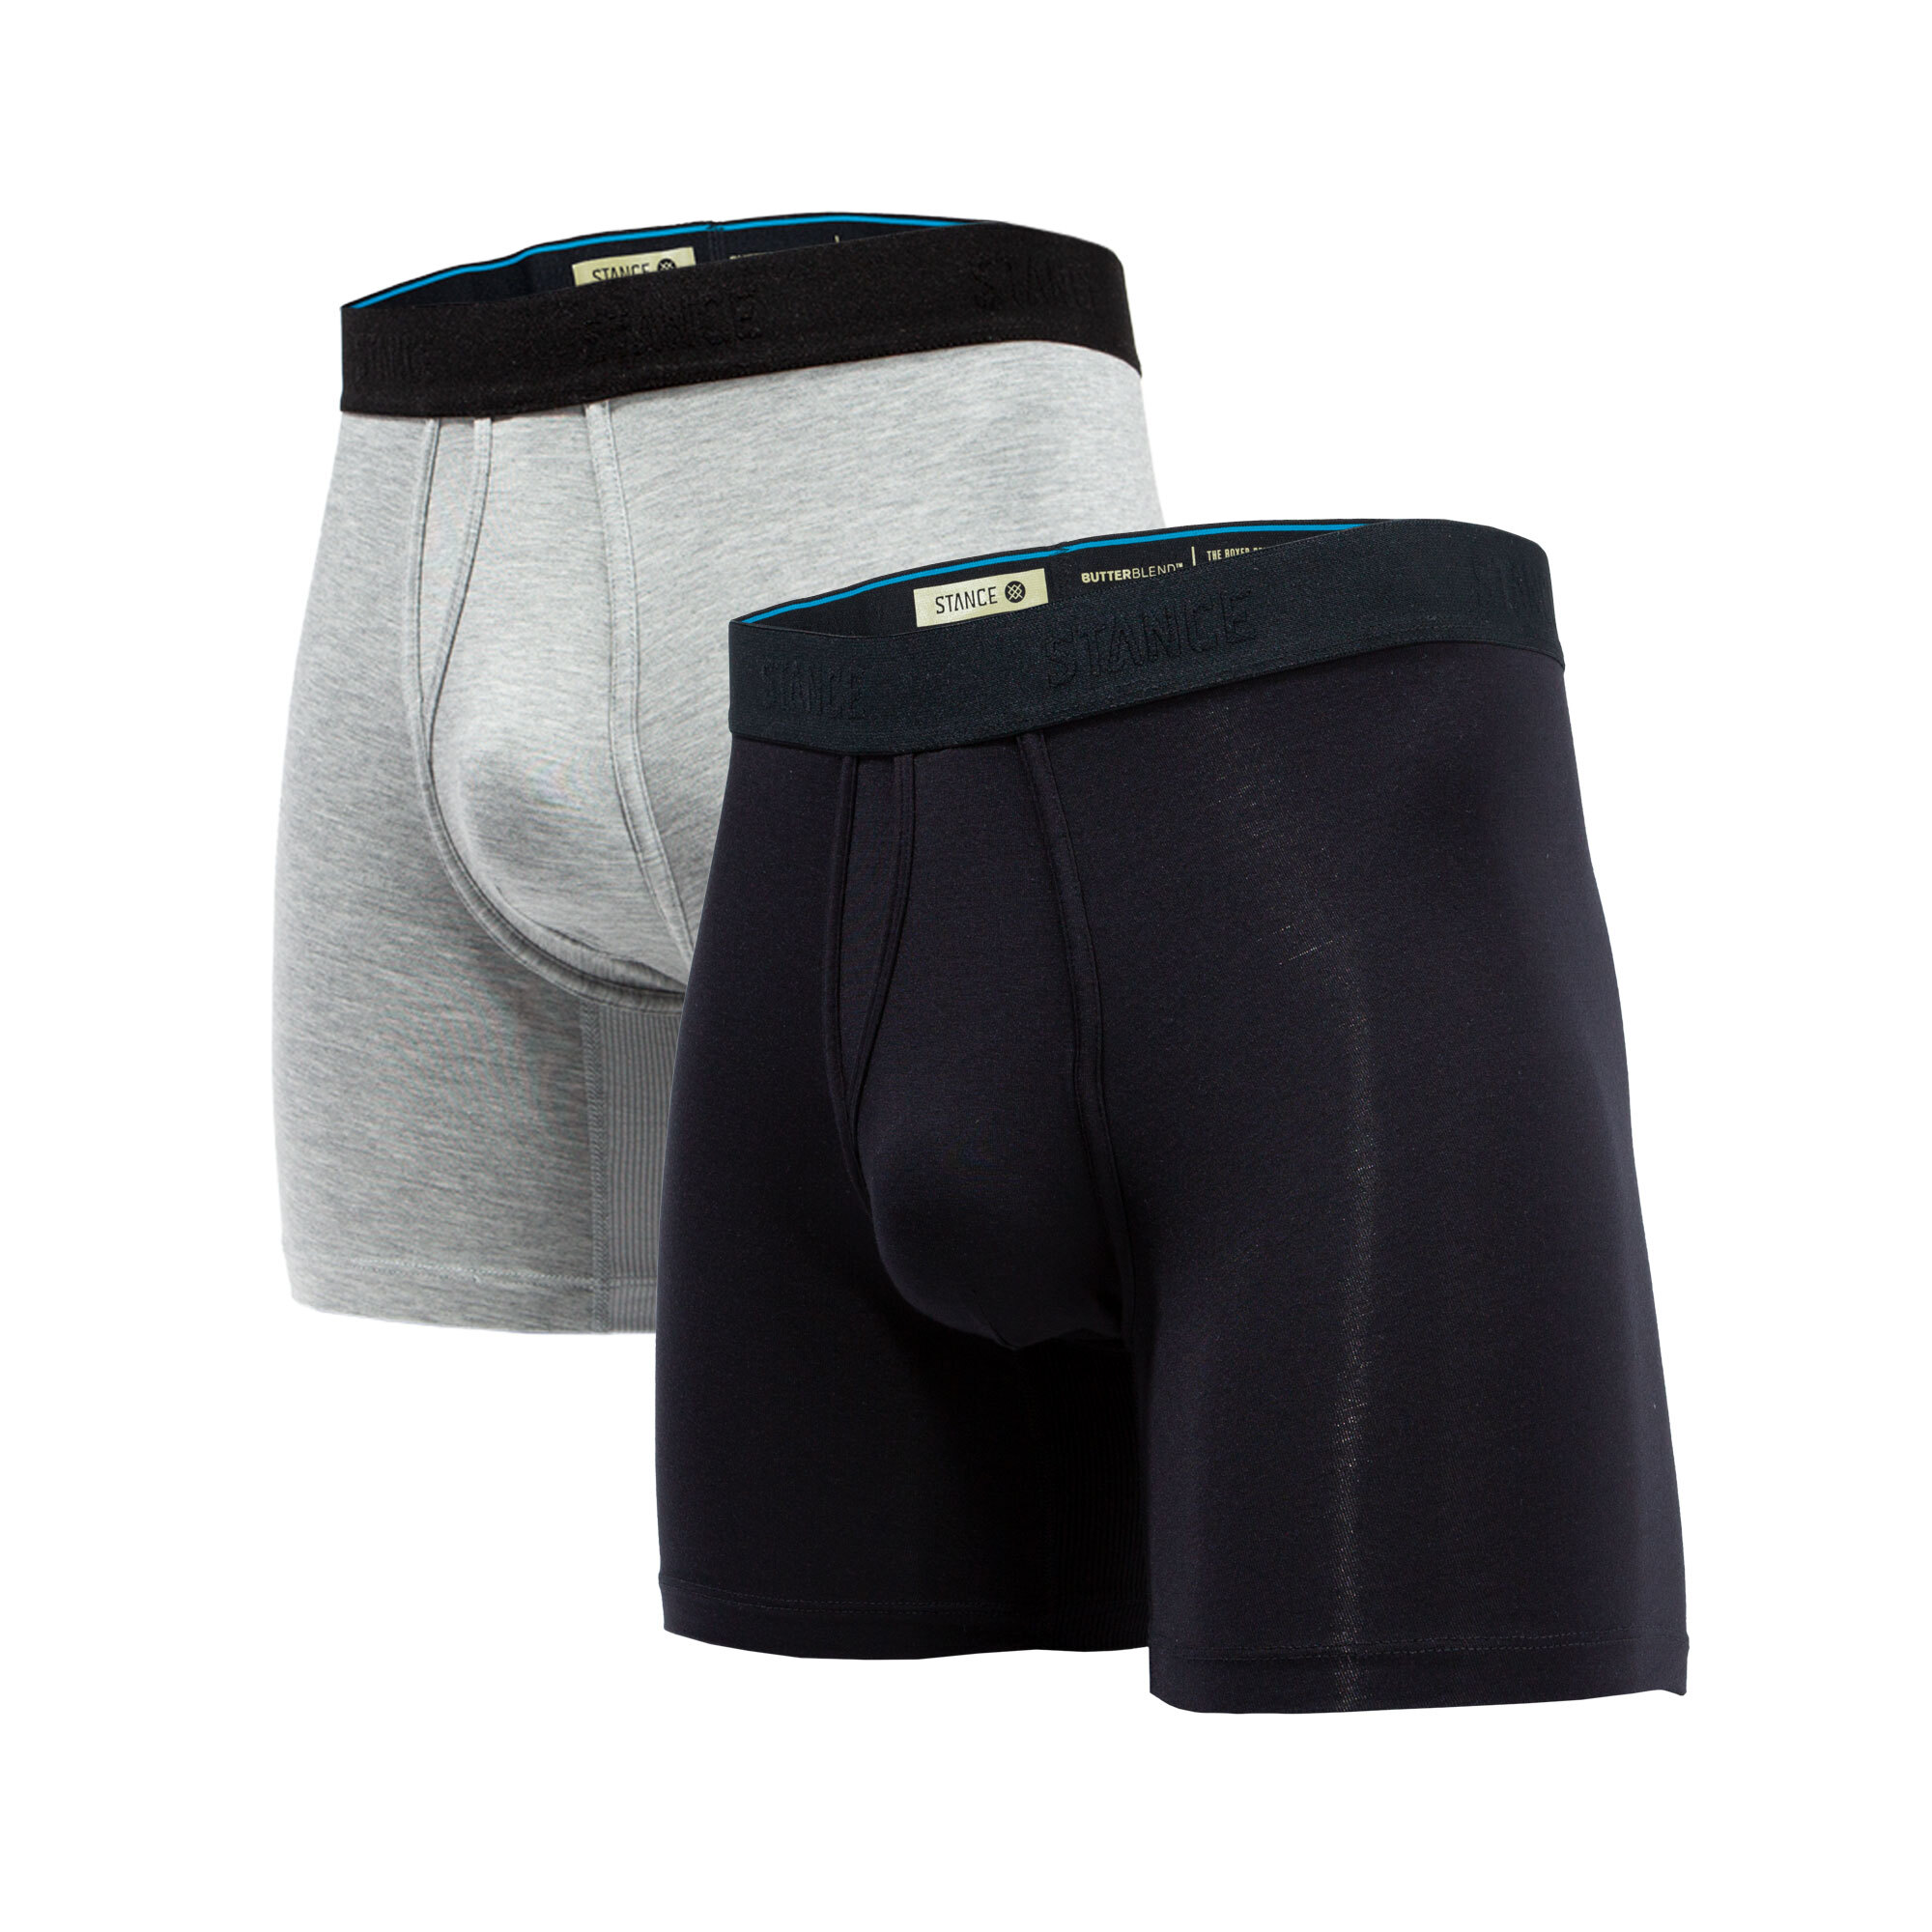 Bespin Tower Boxer Briefs // Black (L) - Stance Underwear - Touch